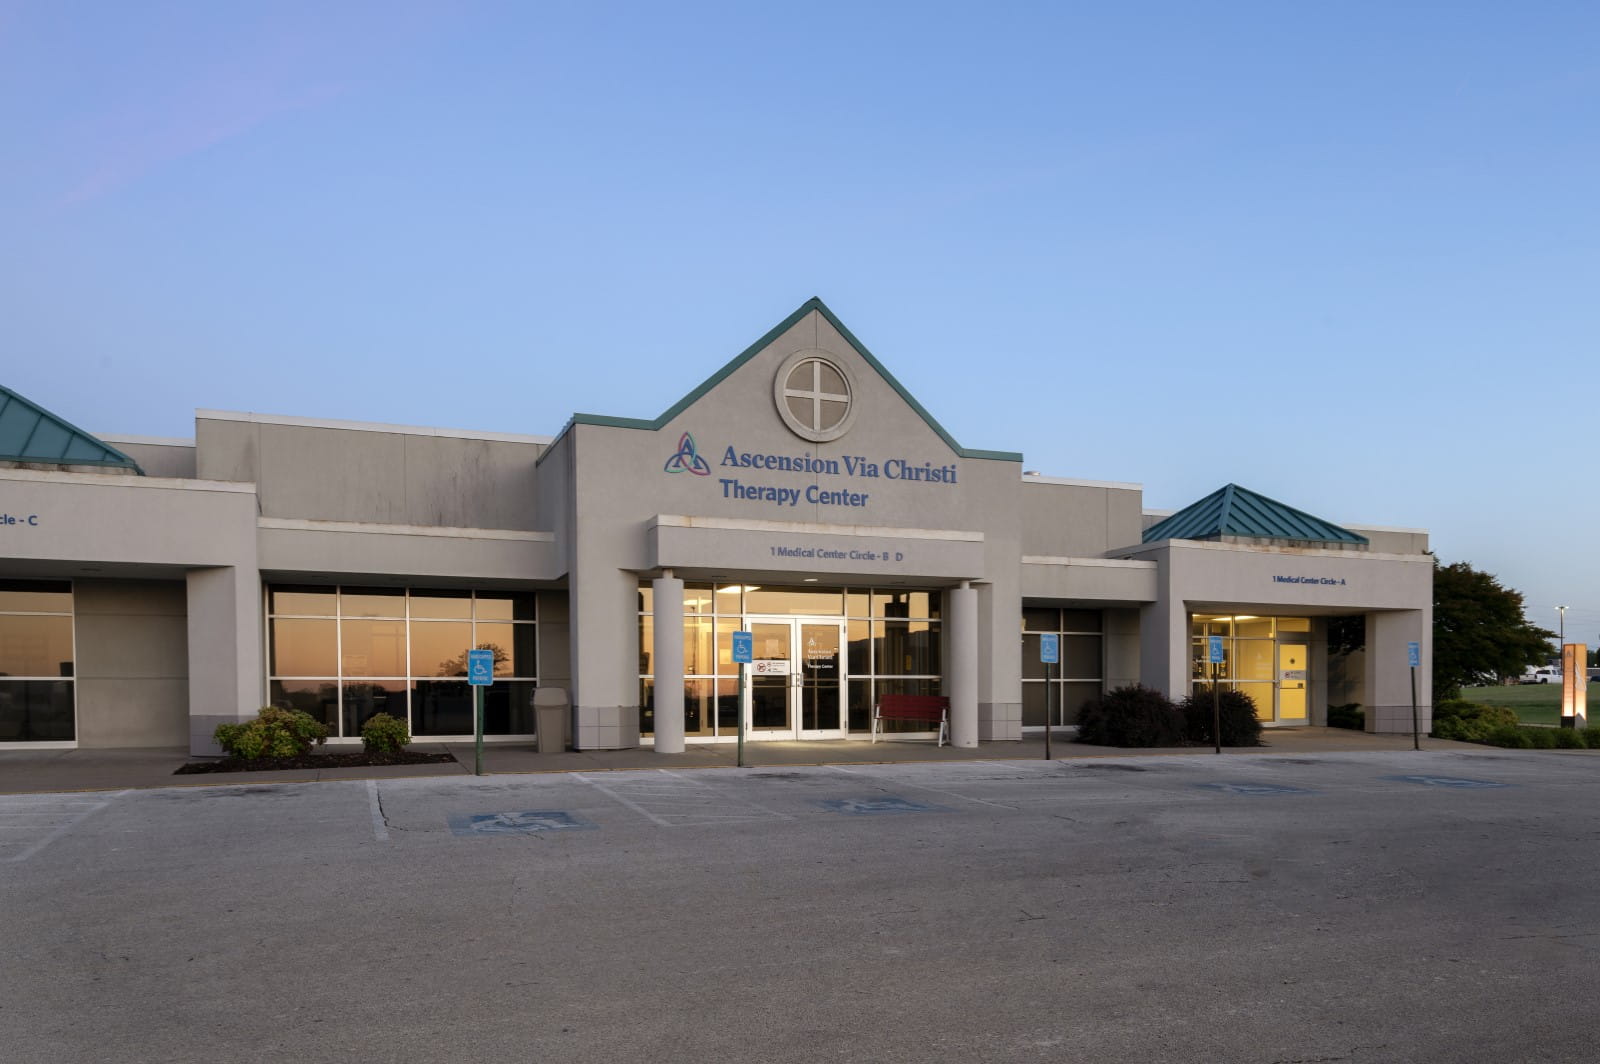 Ascension Via Christi Therapy Center in Pittsburg